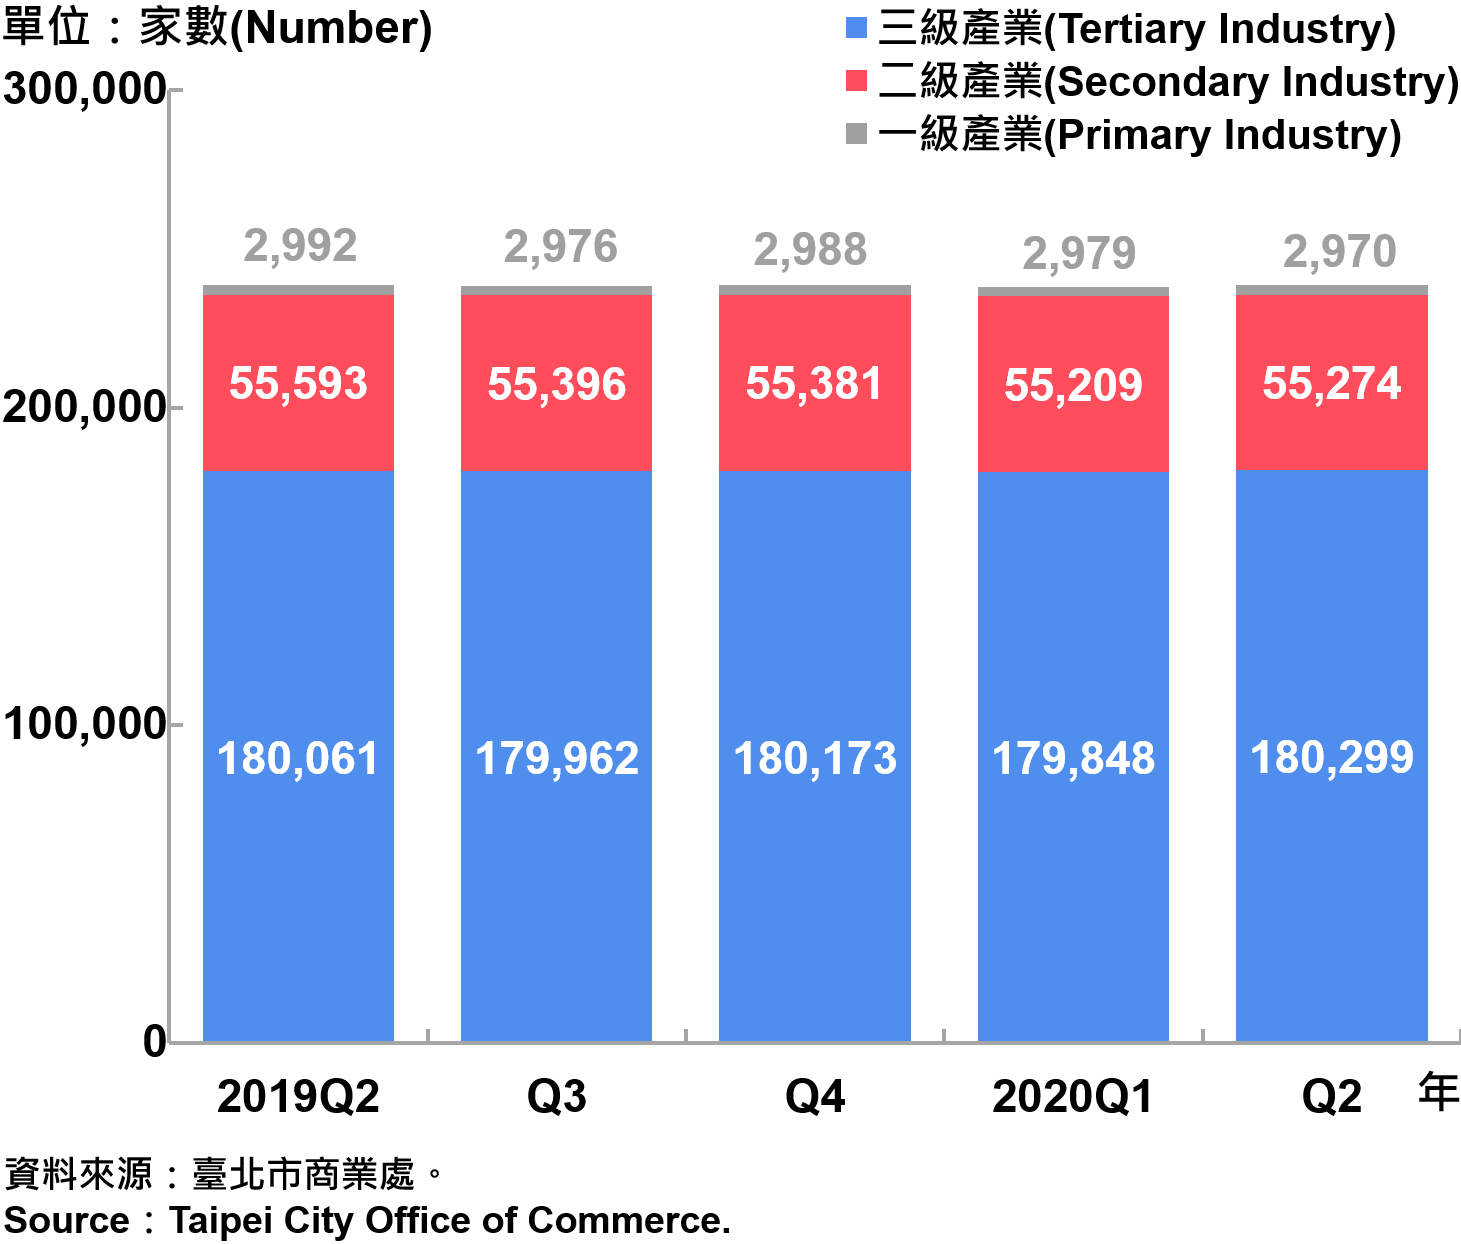 臺北市一二三級產業登記家數—2020Q2 Number of Primary , Secondary and Tertiary Industry in Taipei City—2020Q2